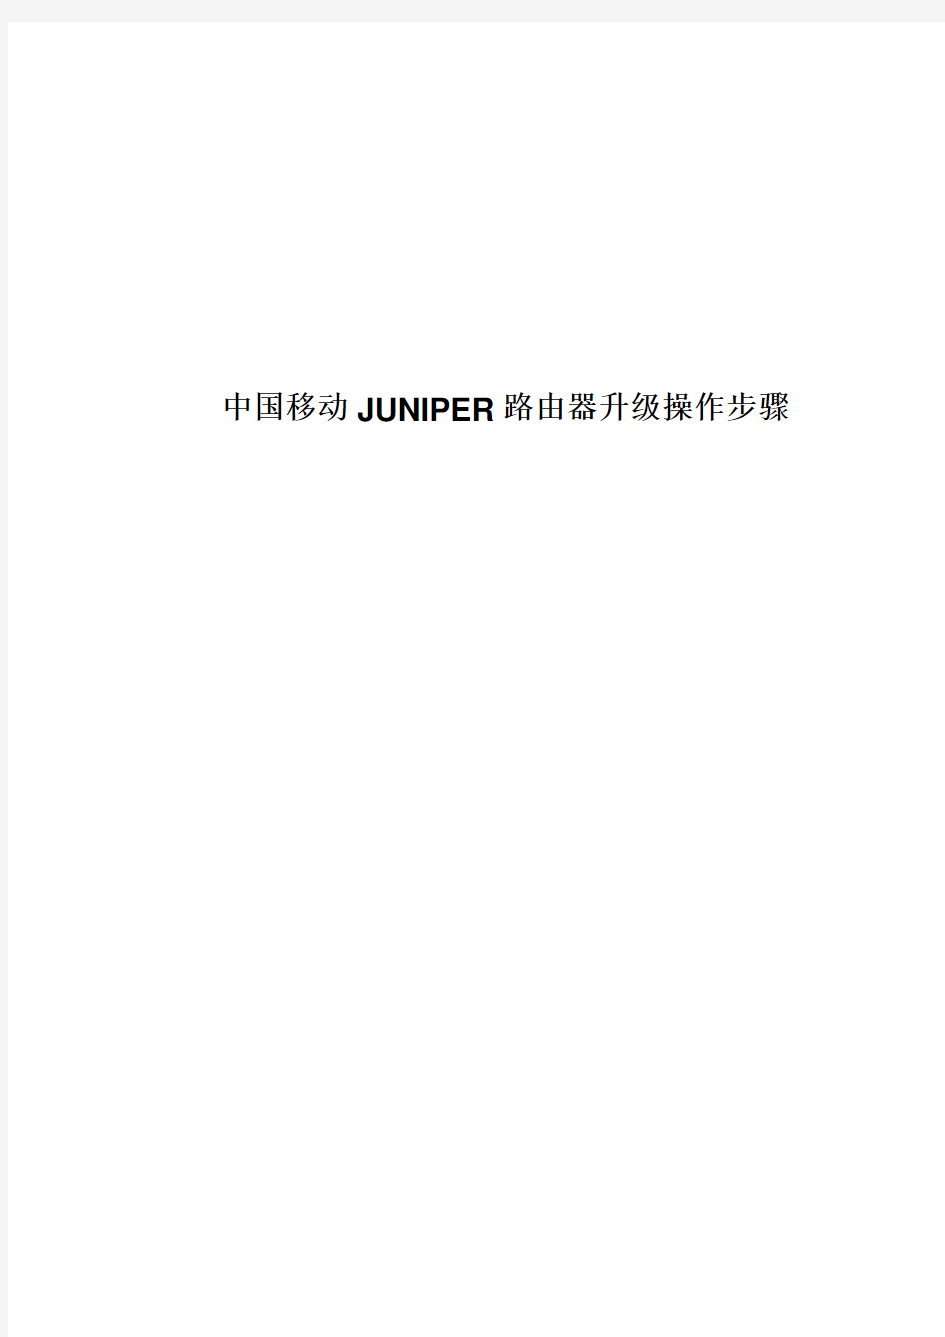 北京移动公司JUNIPER路由器升级步骤